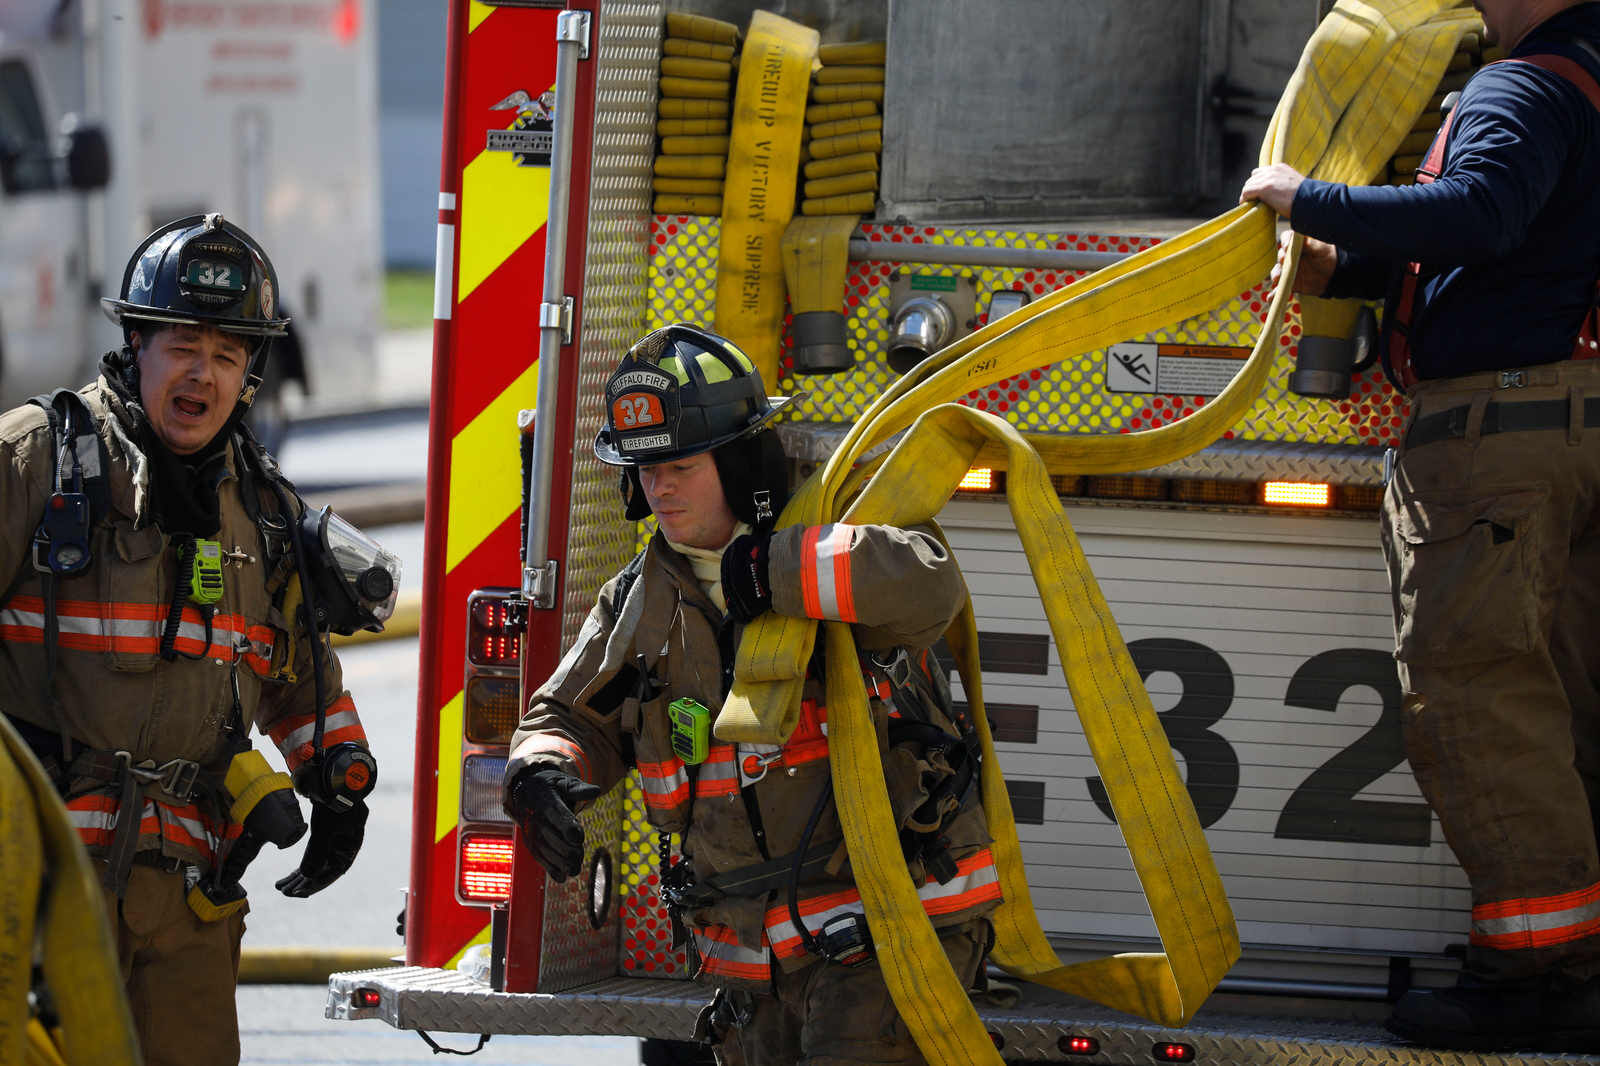 Fire fighter Fireman Insurance Co Newark NJ Clock case aluminum 9 1/2" tall USA 